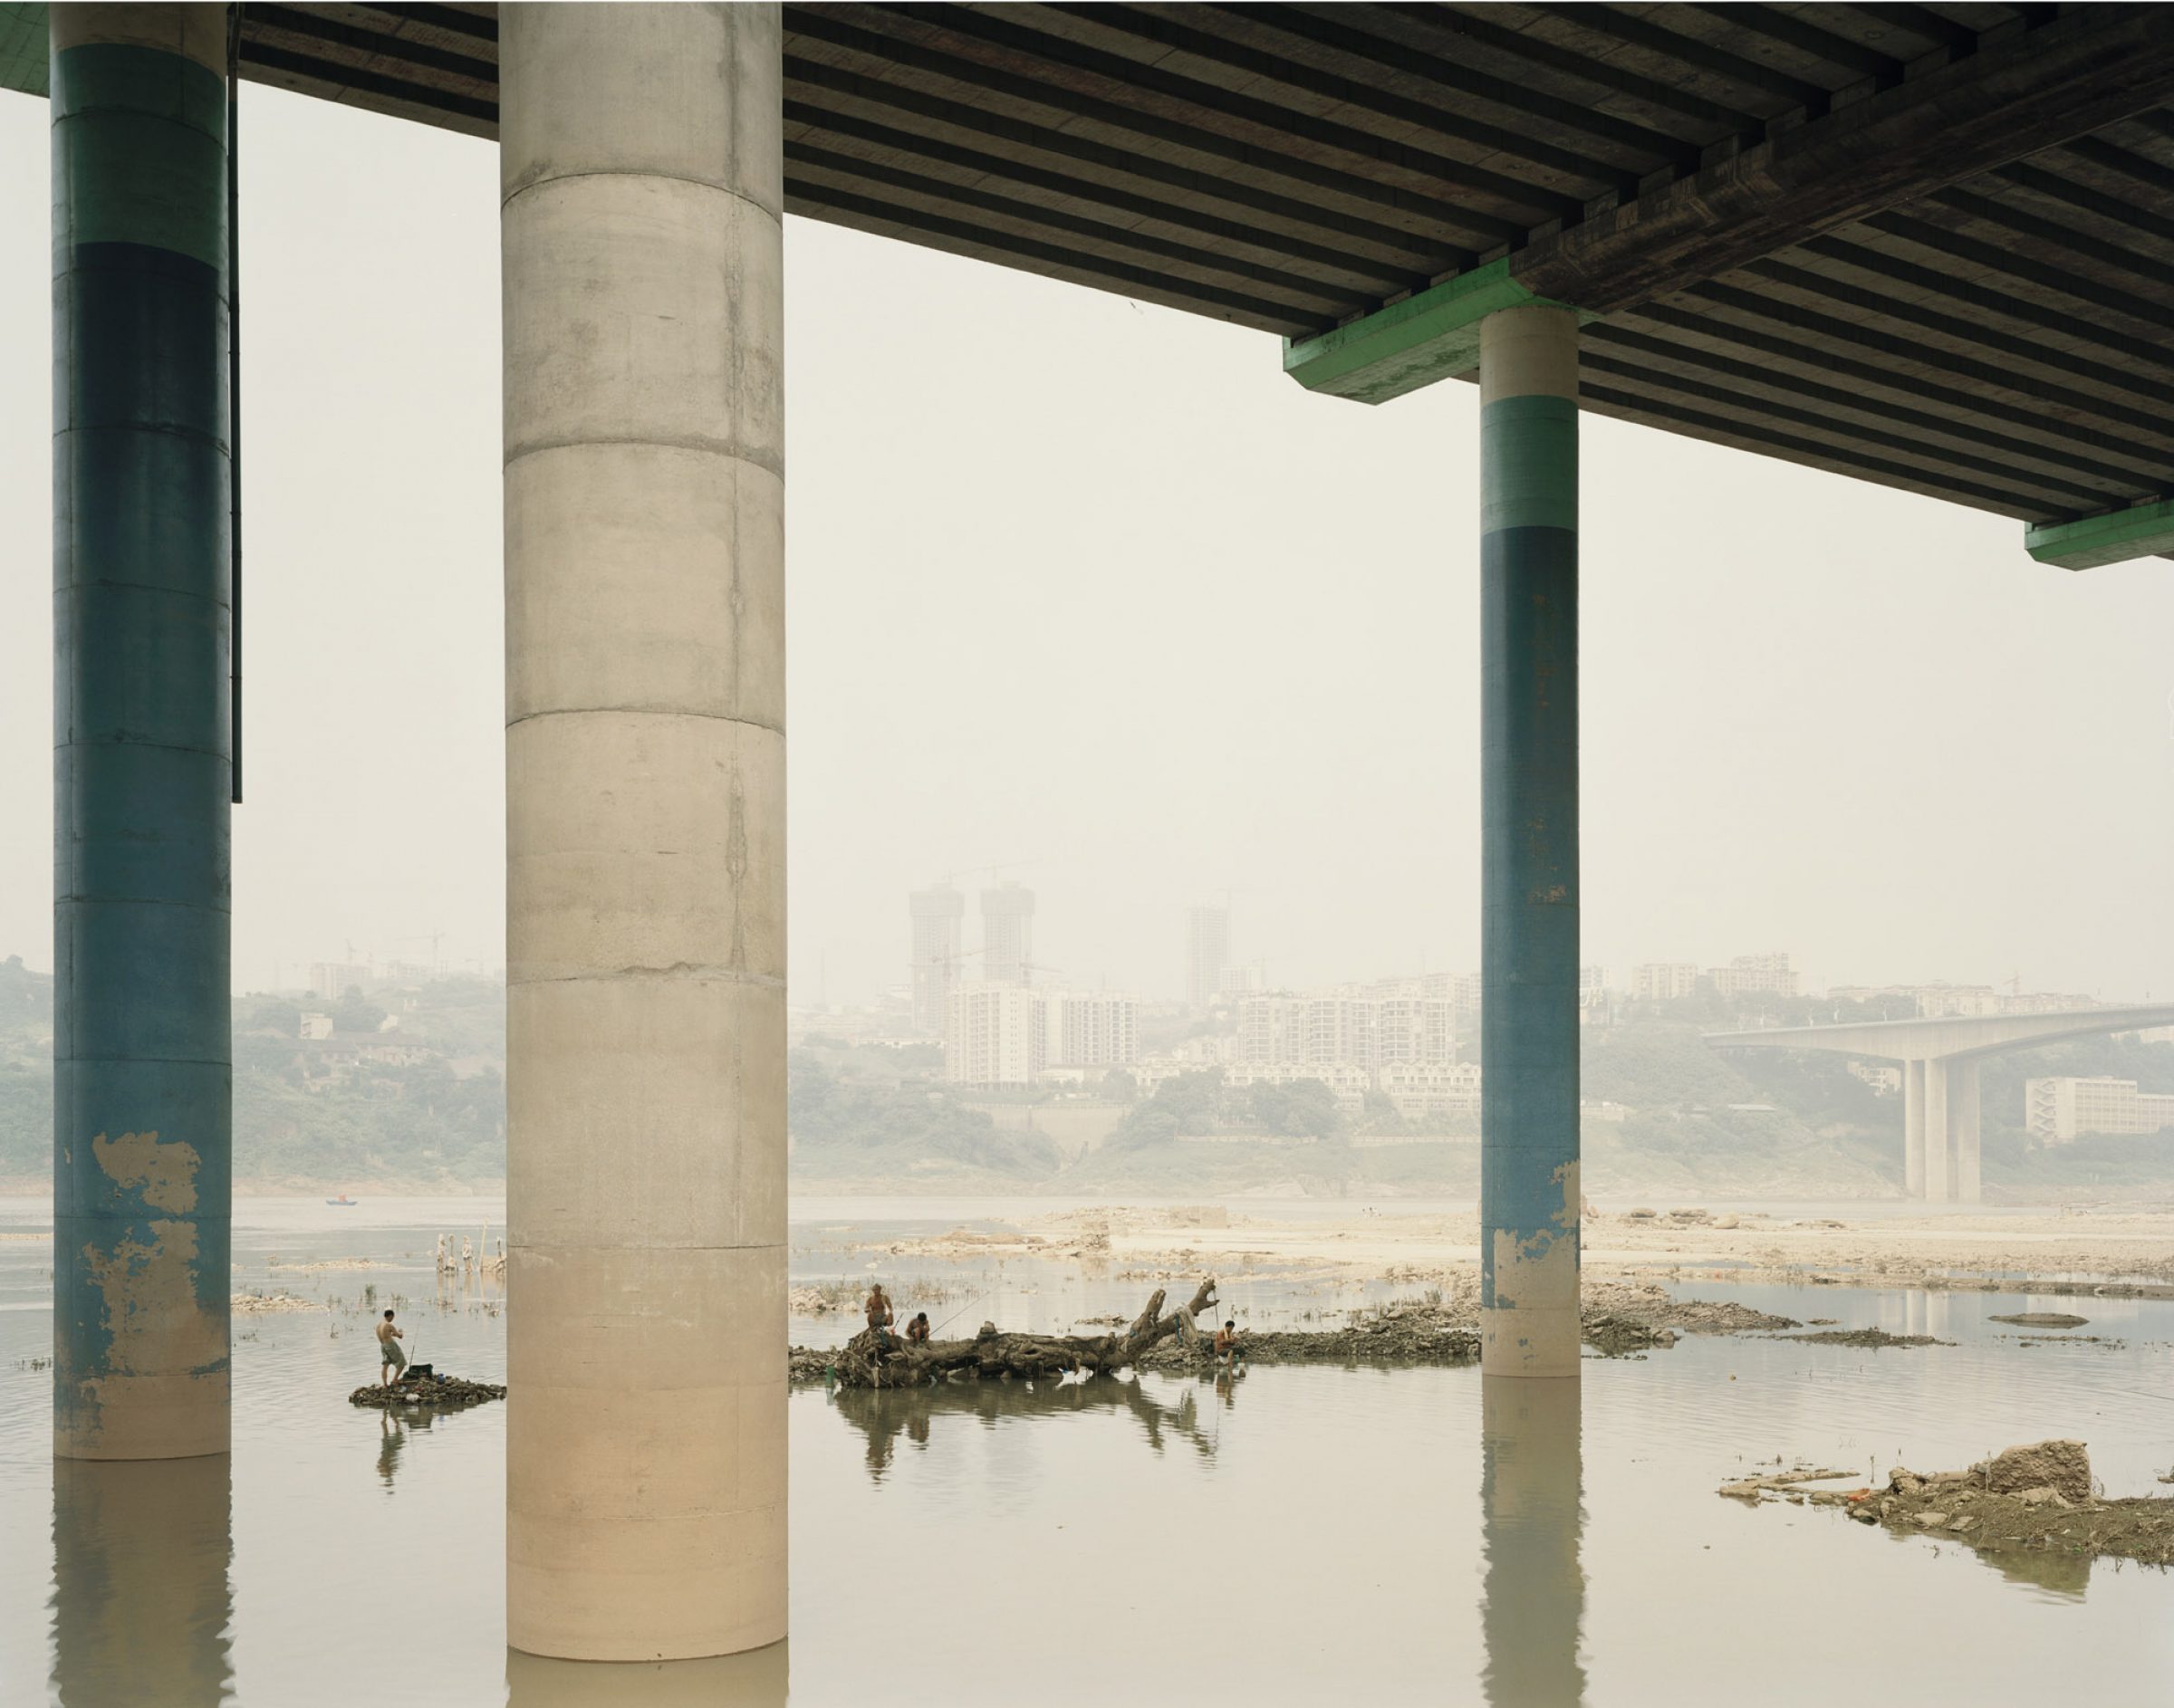 Yangtze, The Long River